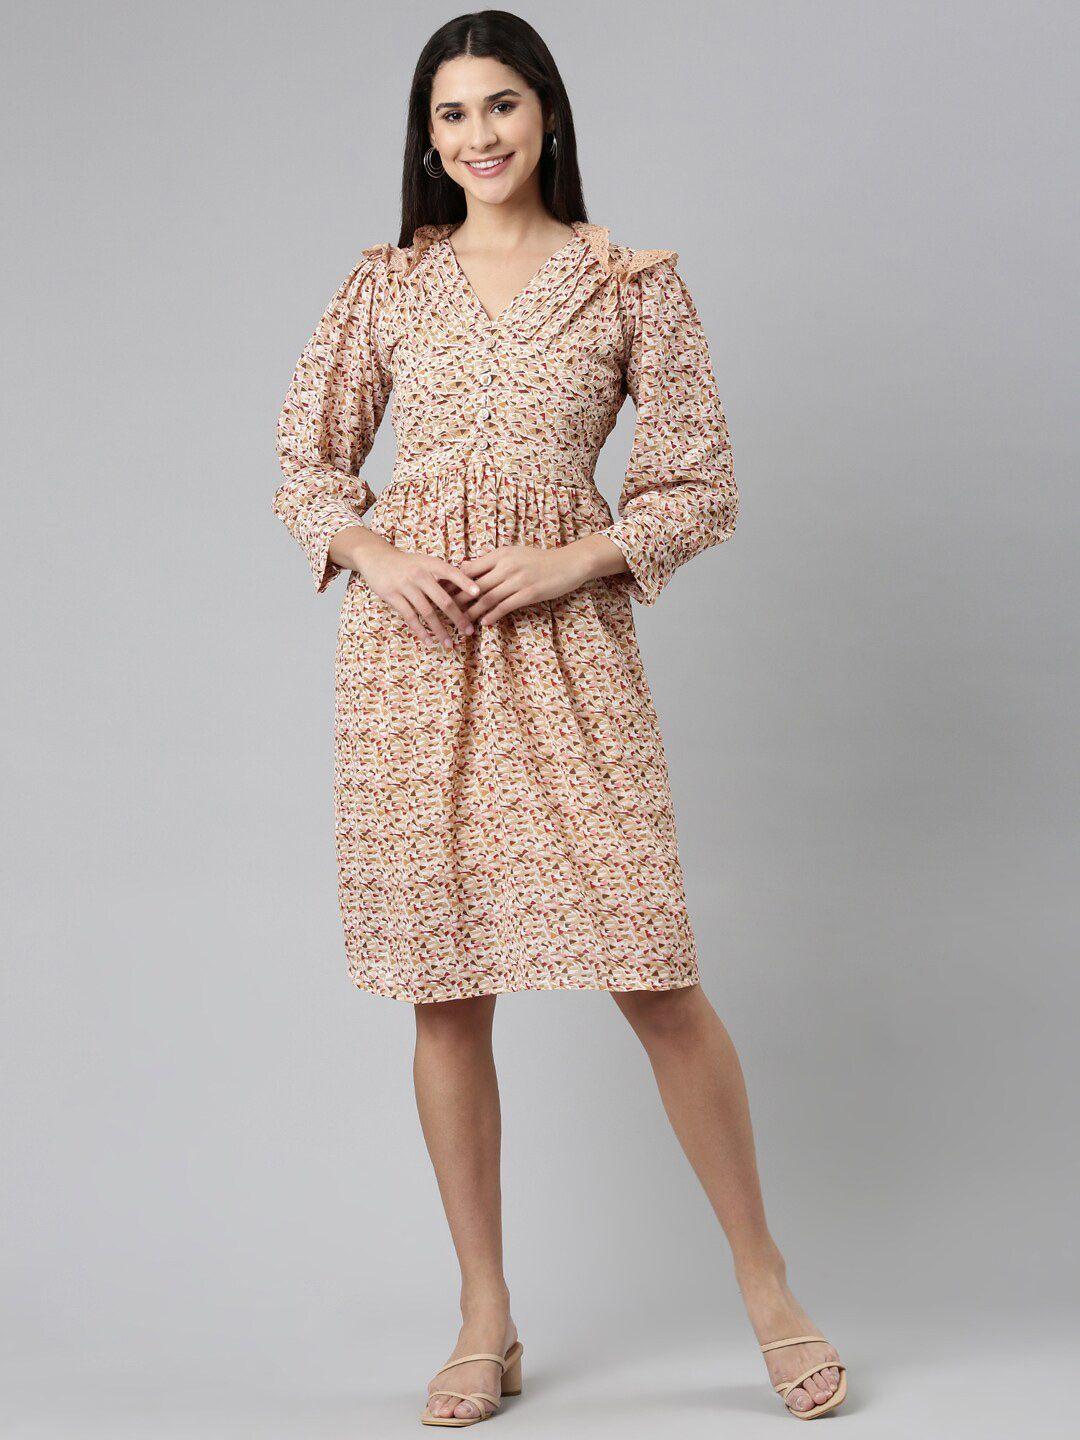 showoff-geometric-printed-a-line-dress